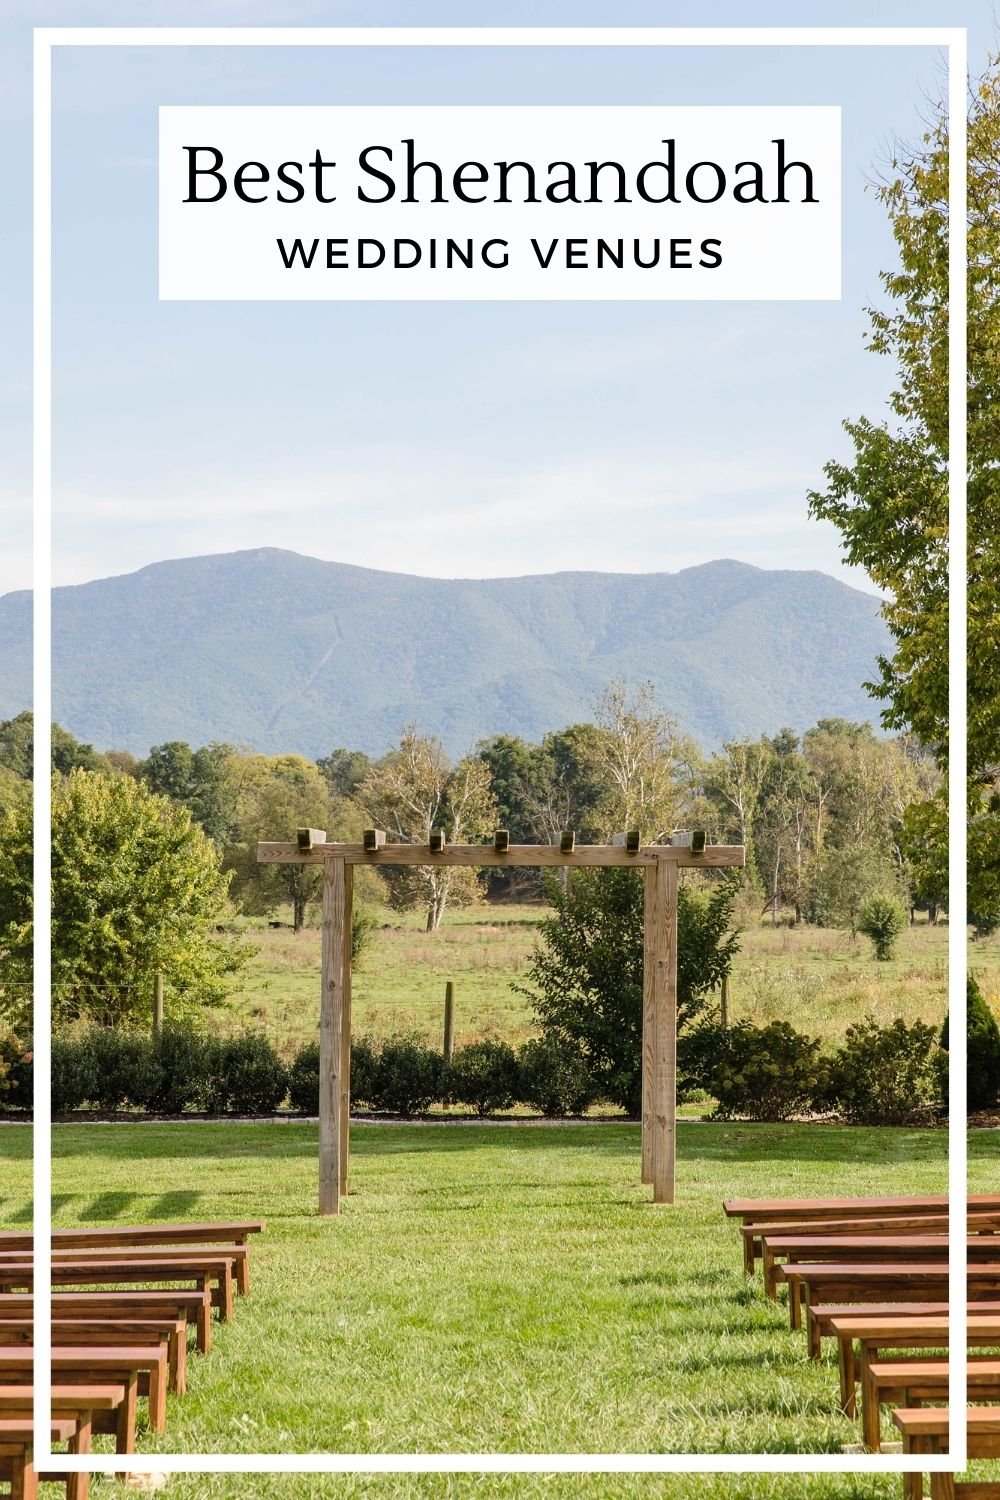 Best Shenandoah wedding venues